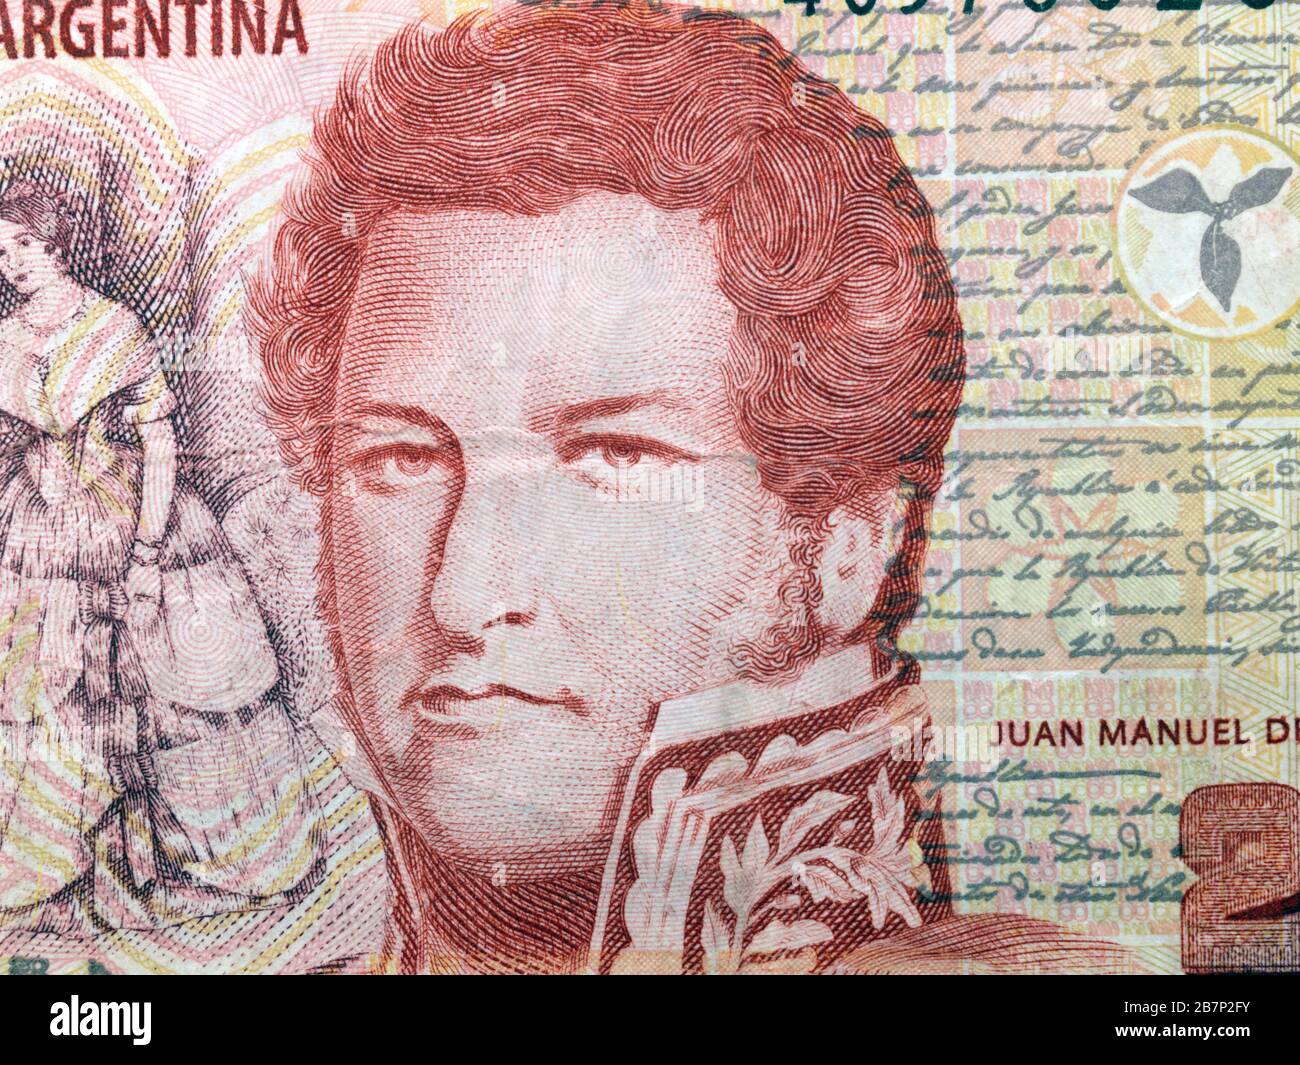 Banco de la República Argentina veinte Pesos Banknotte representando a Juan Manuel de la Rosas 1793-1877 líder político y militar argentino que era Gove Foto de stock